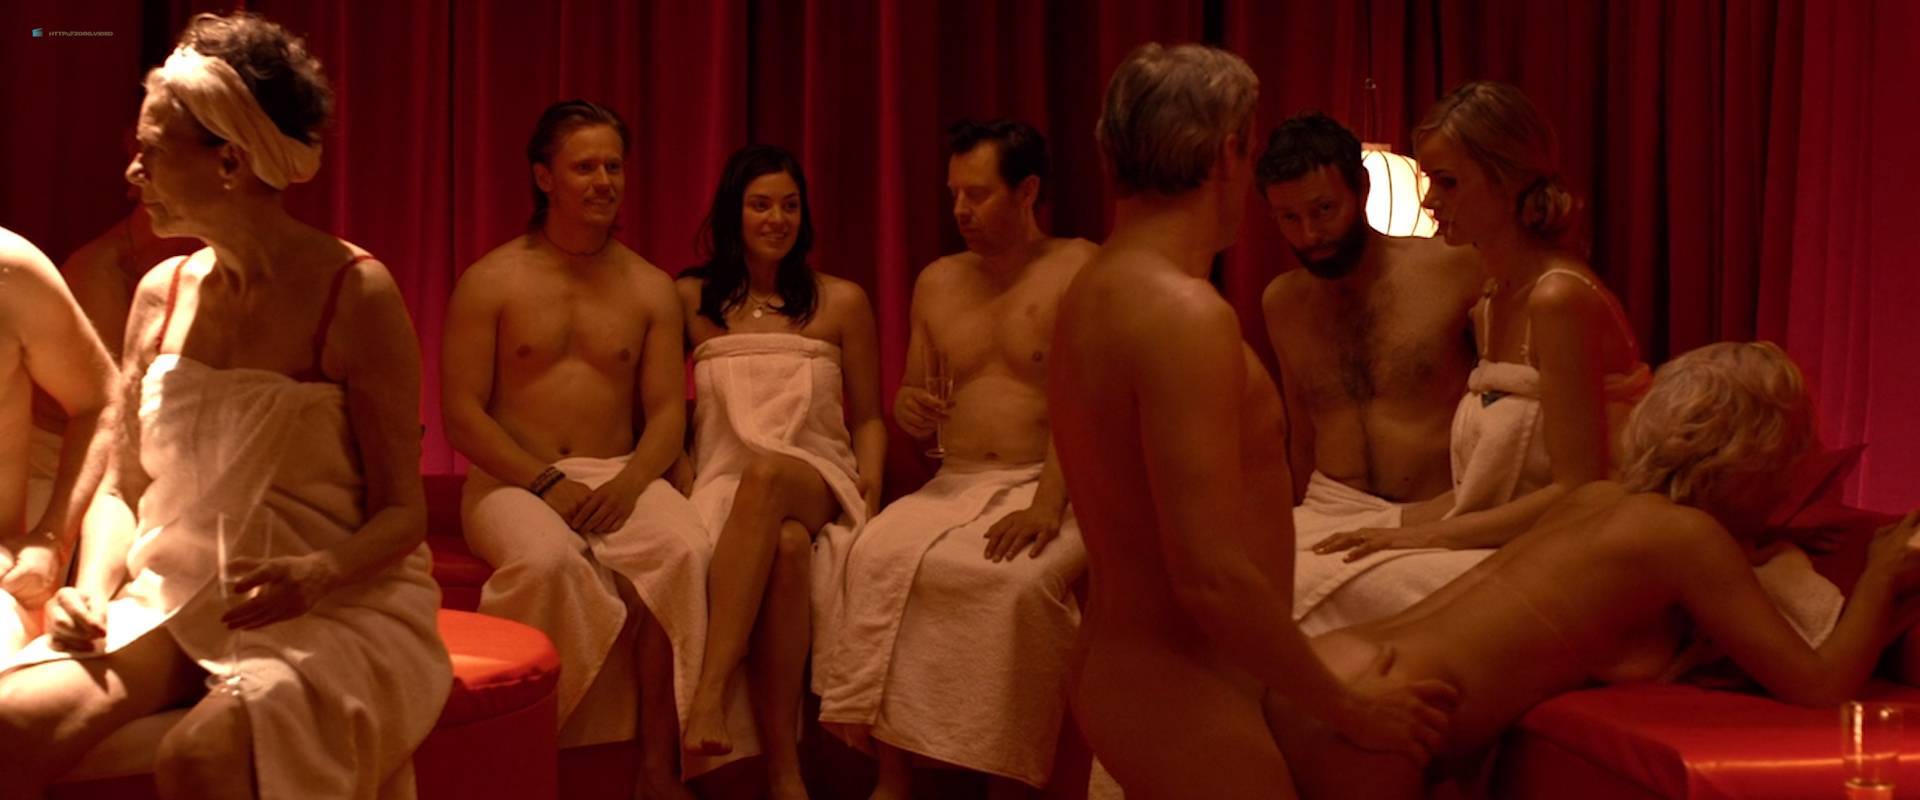 Natalie Madueño Full Frontal Nude Scene From Tordenskjoldsmallbizbigdreams....